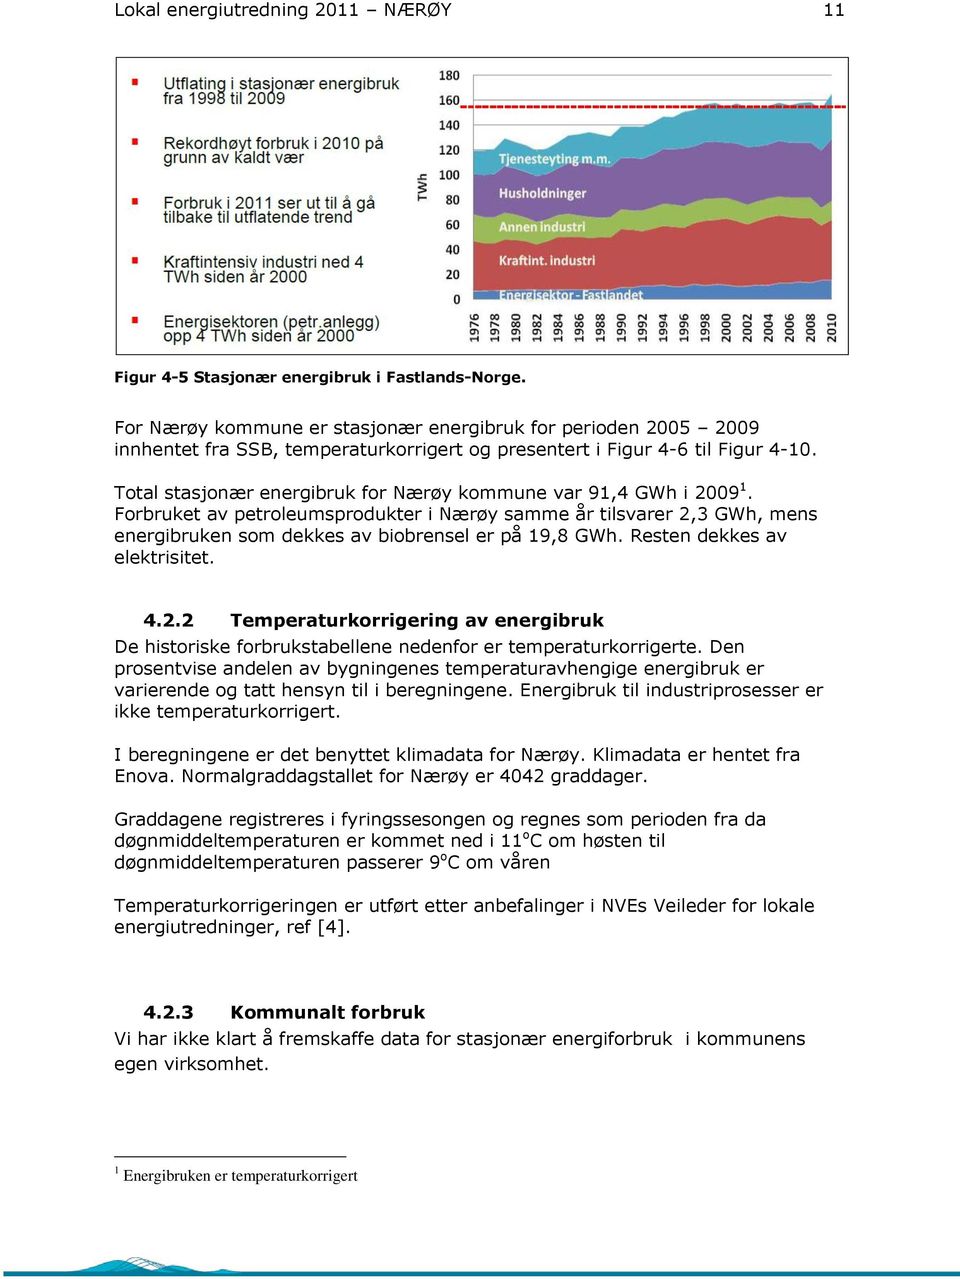 Total stasjonær energibruk for Nærøy kommune var 91,4 GWh i 29 1. Forbruket av petroleumsprodukter i Nærøy samme år tilsvarer 2,3 GWh, mens energibruken som dekkes av biobrensel er på 19,8 GWh.